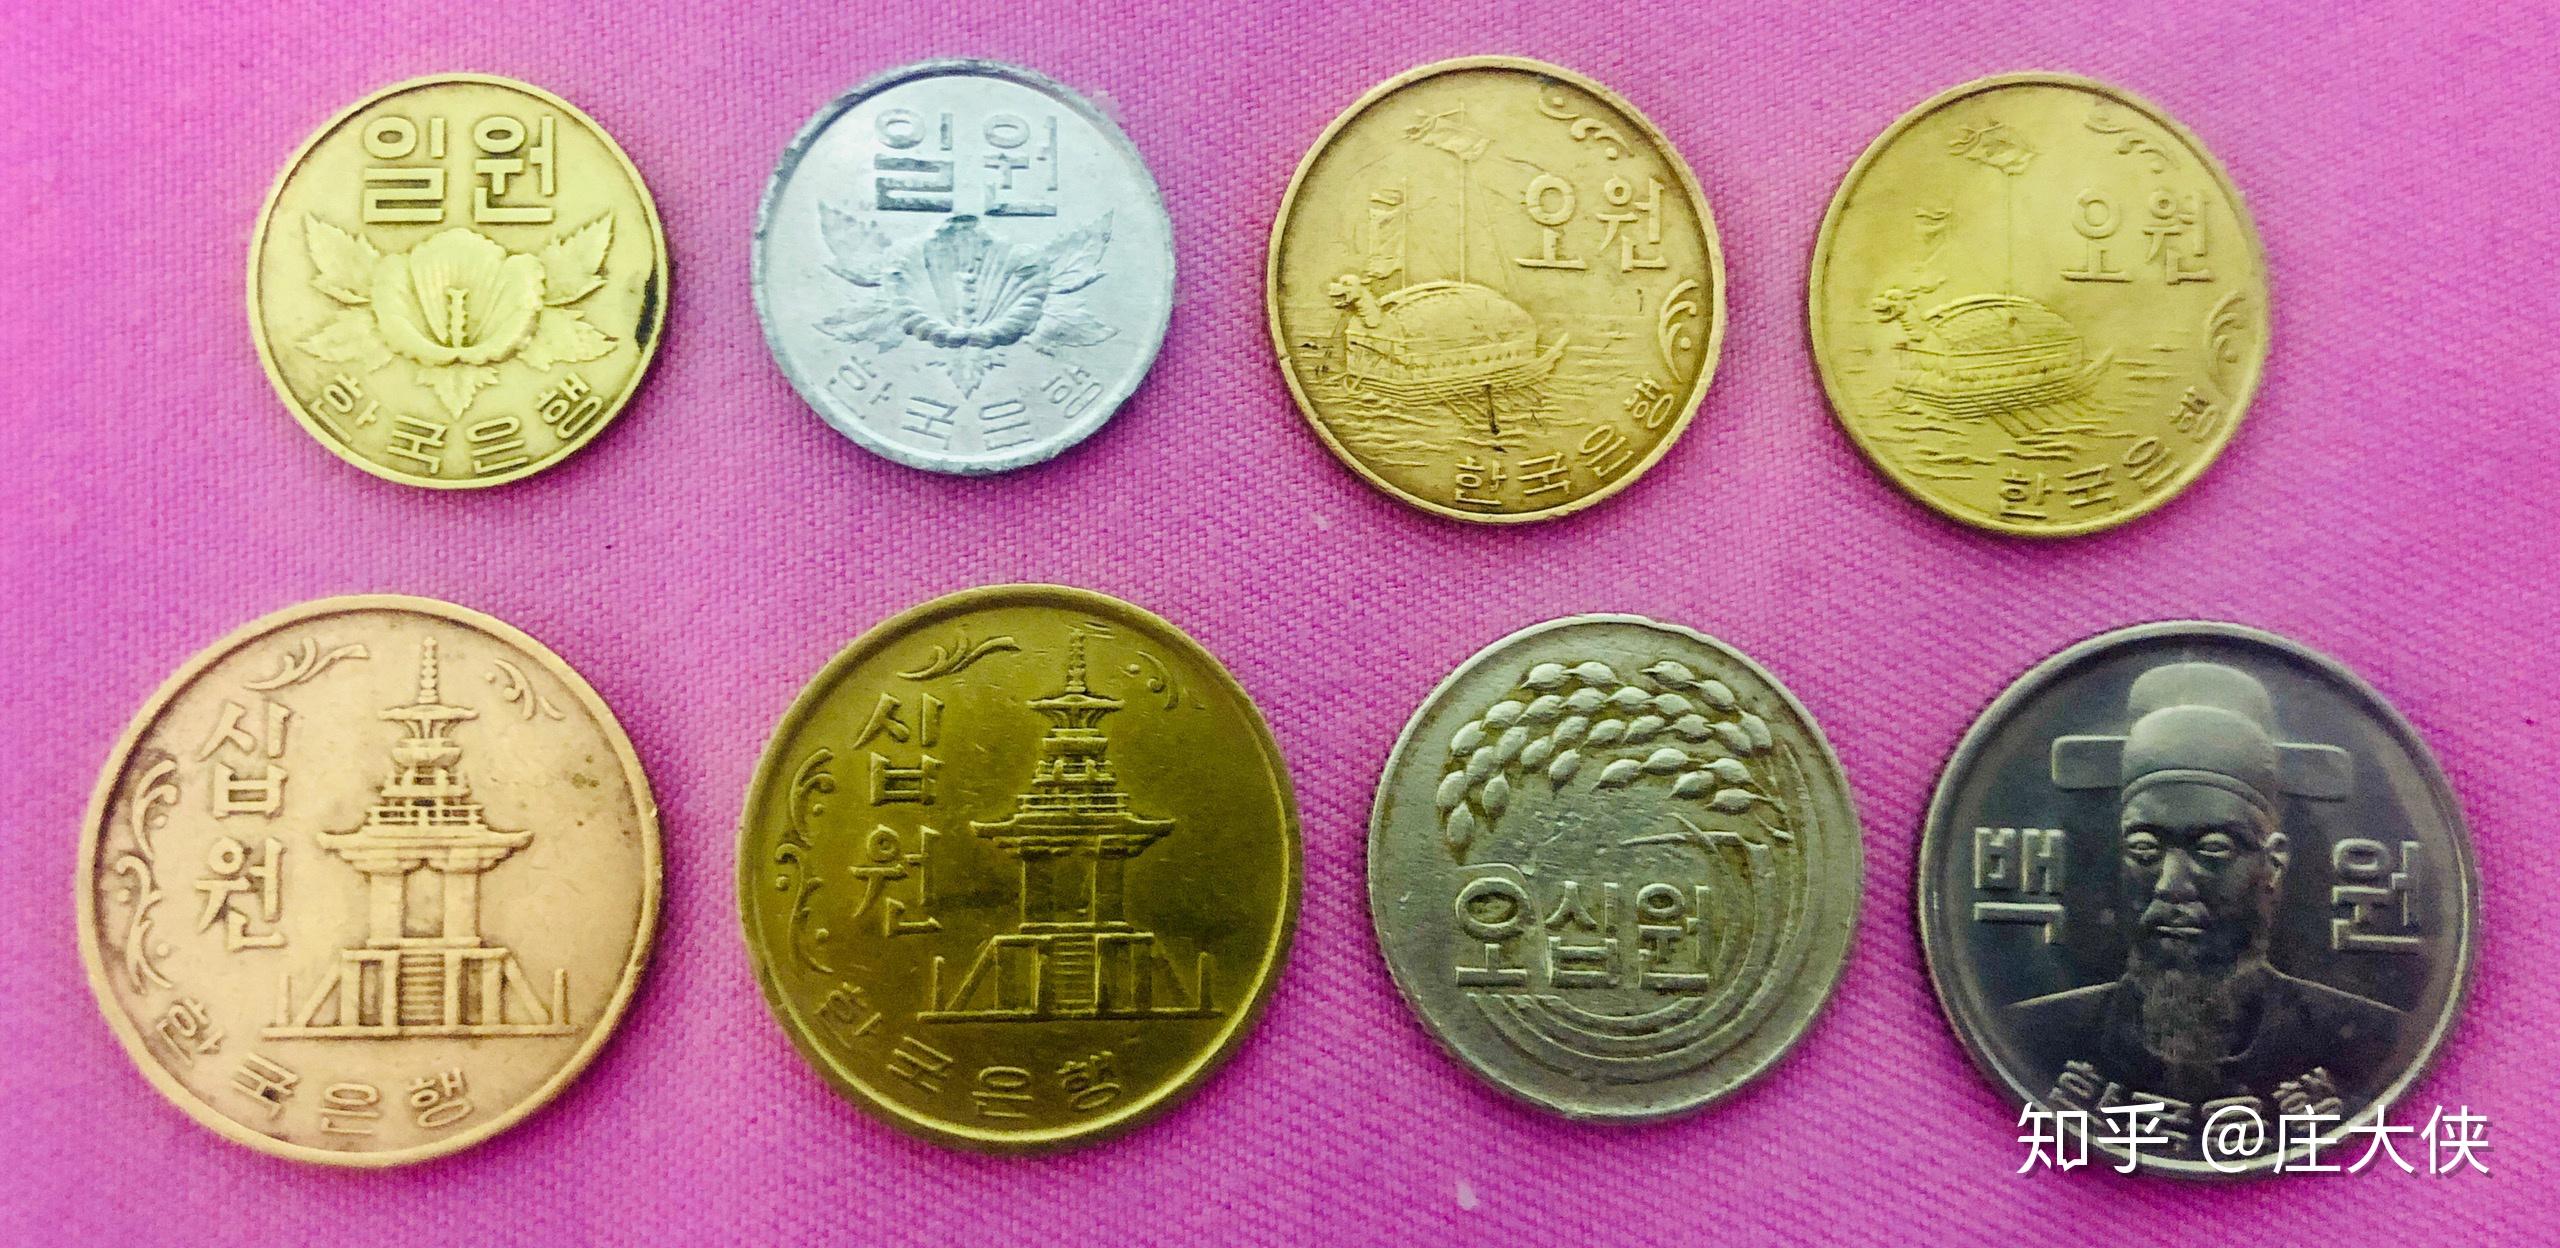 原有的圜硬币又容易和新韩元搞混淆,1966年8月16日,韩国开始发行该